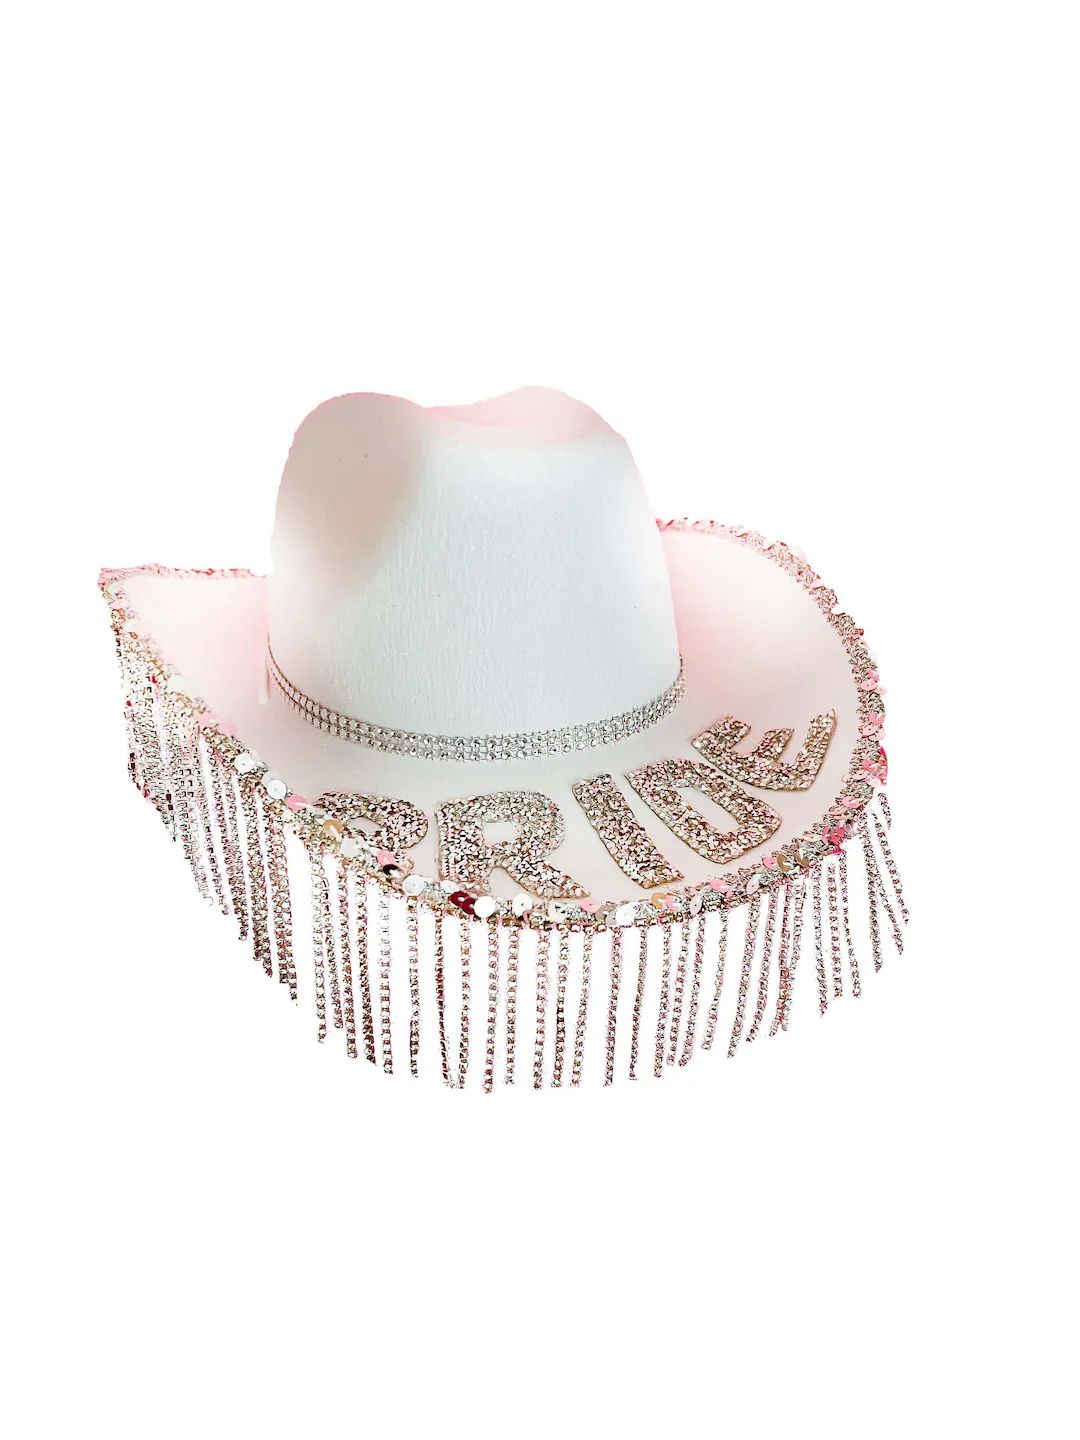 Bride Rhinestone Fringe Cowboy Hat | Nashville Bachelorette Party Accessory | White Bridal Gift |... | Etsy (US)